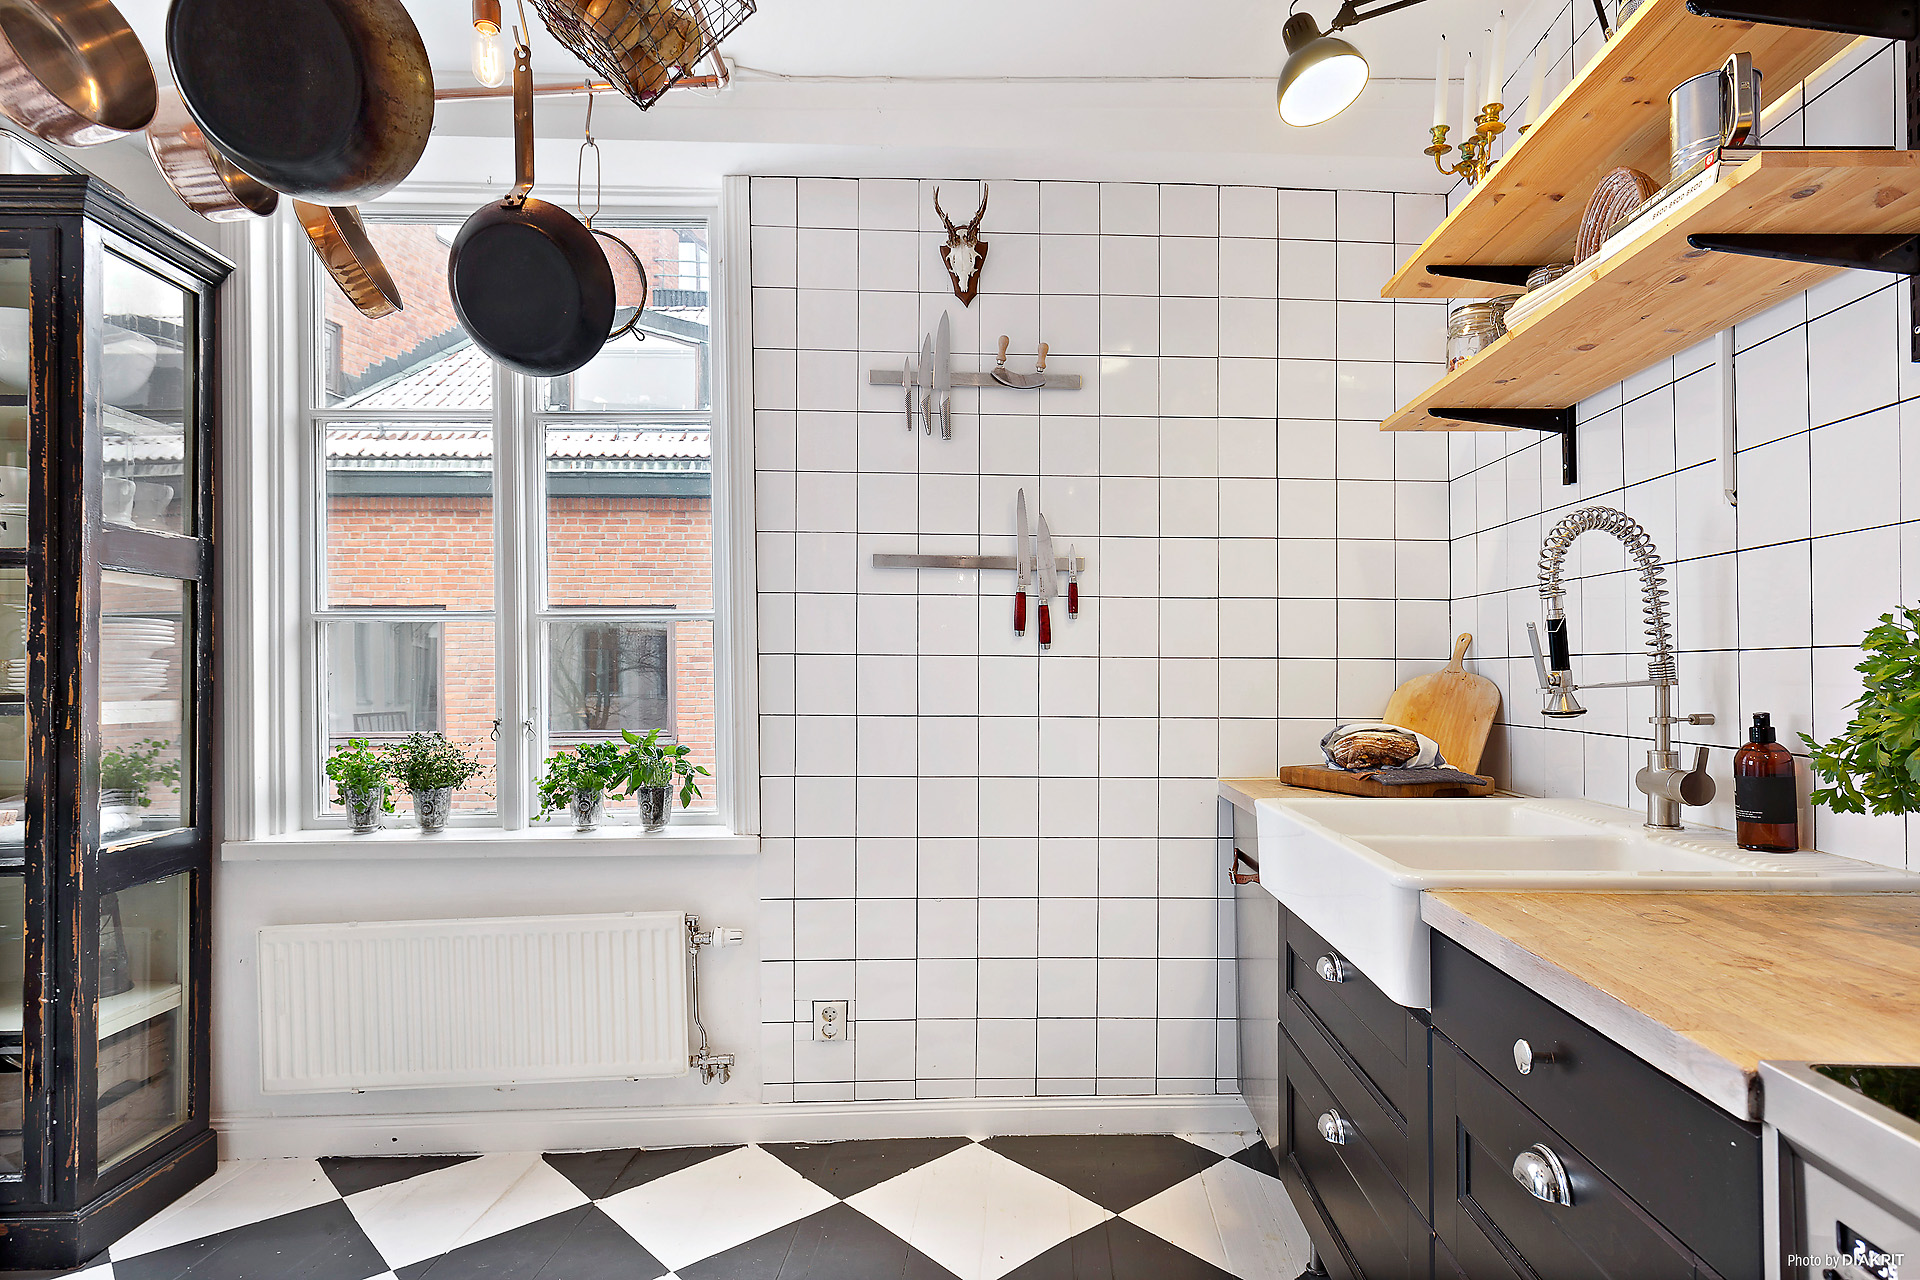 厨房选用黑白地砖铺设地面，这就给该区域定下了黑白的基调。墙面是小方砖铺墙。银色的冰箱与黑白对比起来显得熠熠生辉。